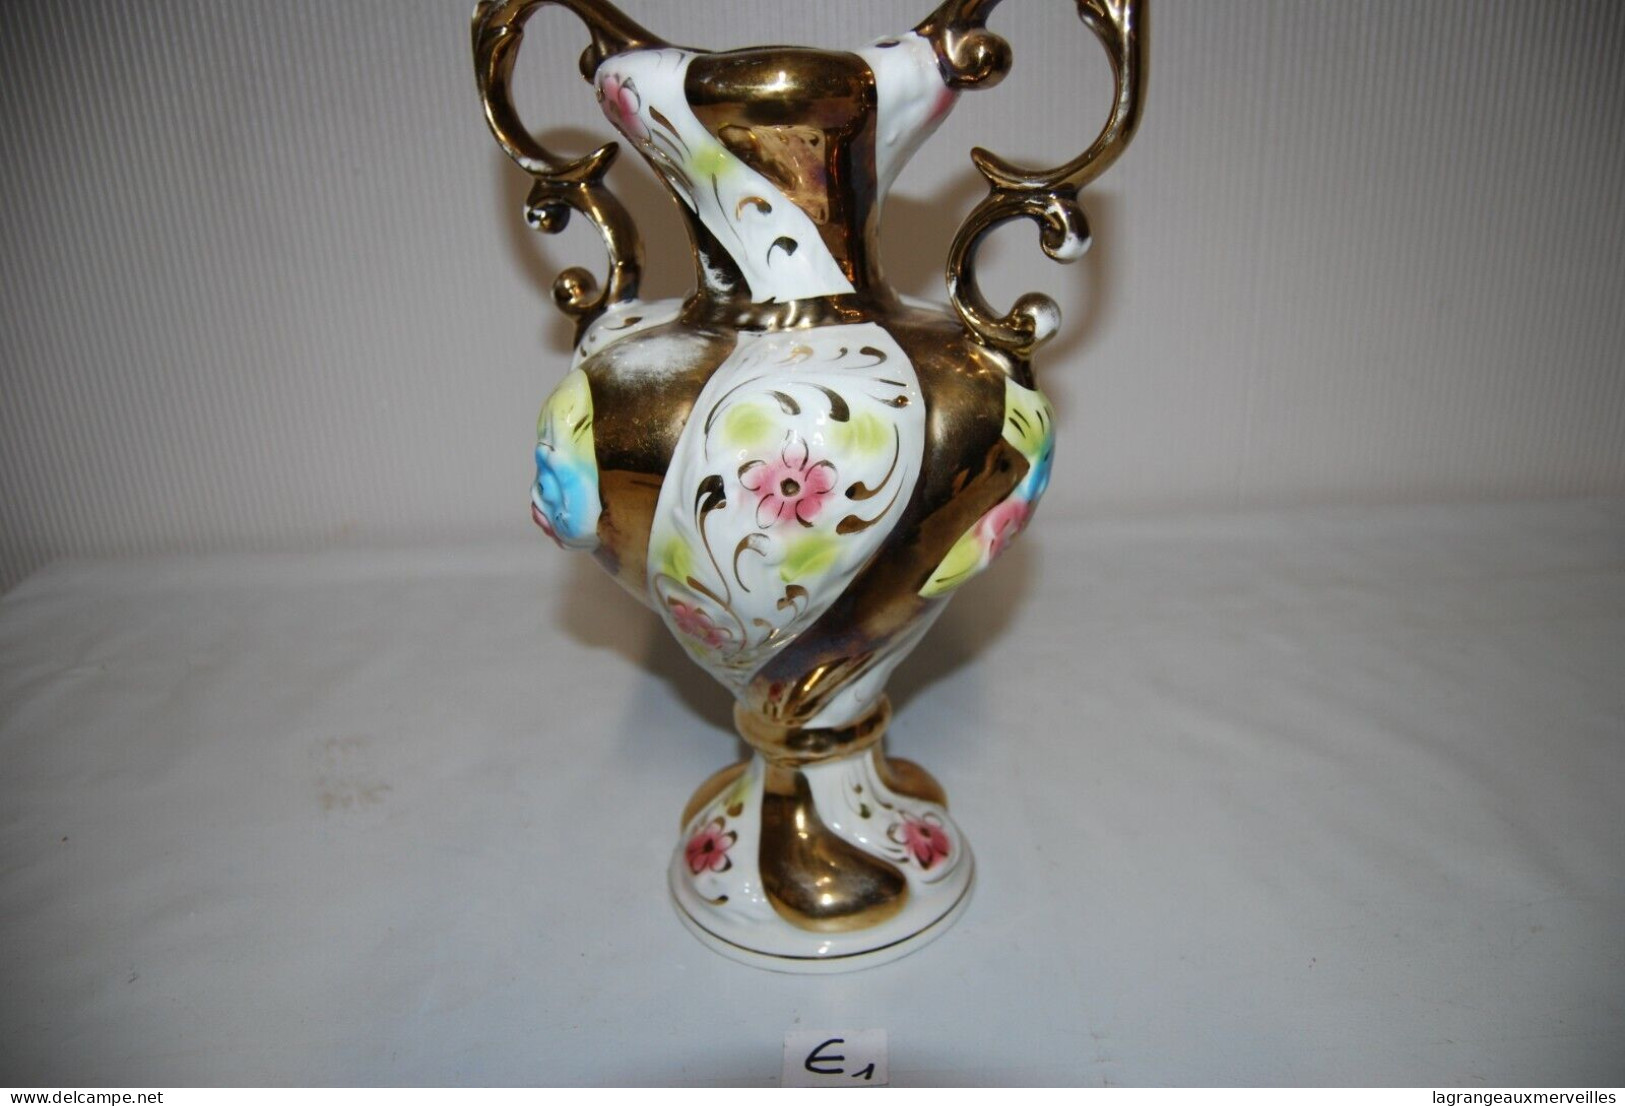 E1 Magnifique Vase - Beau Travail Italien - Vasi